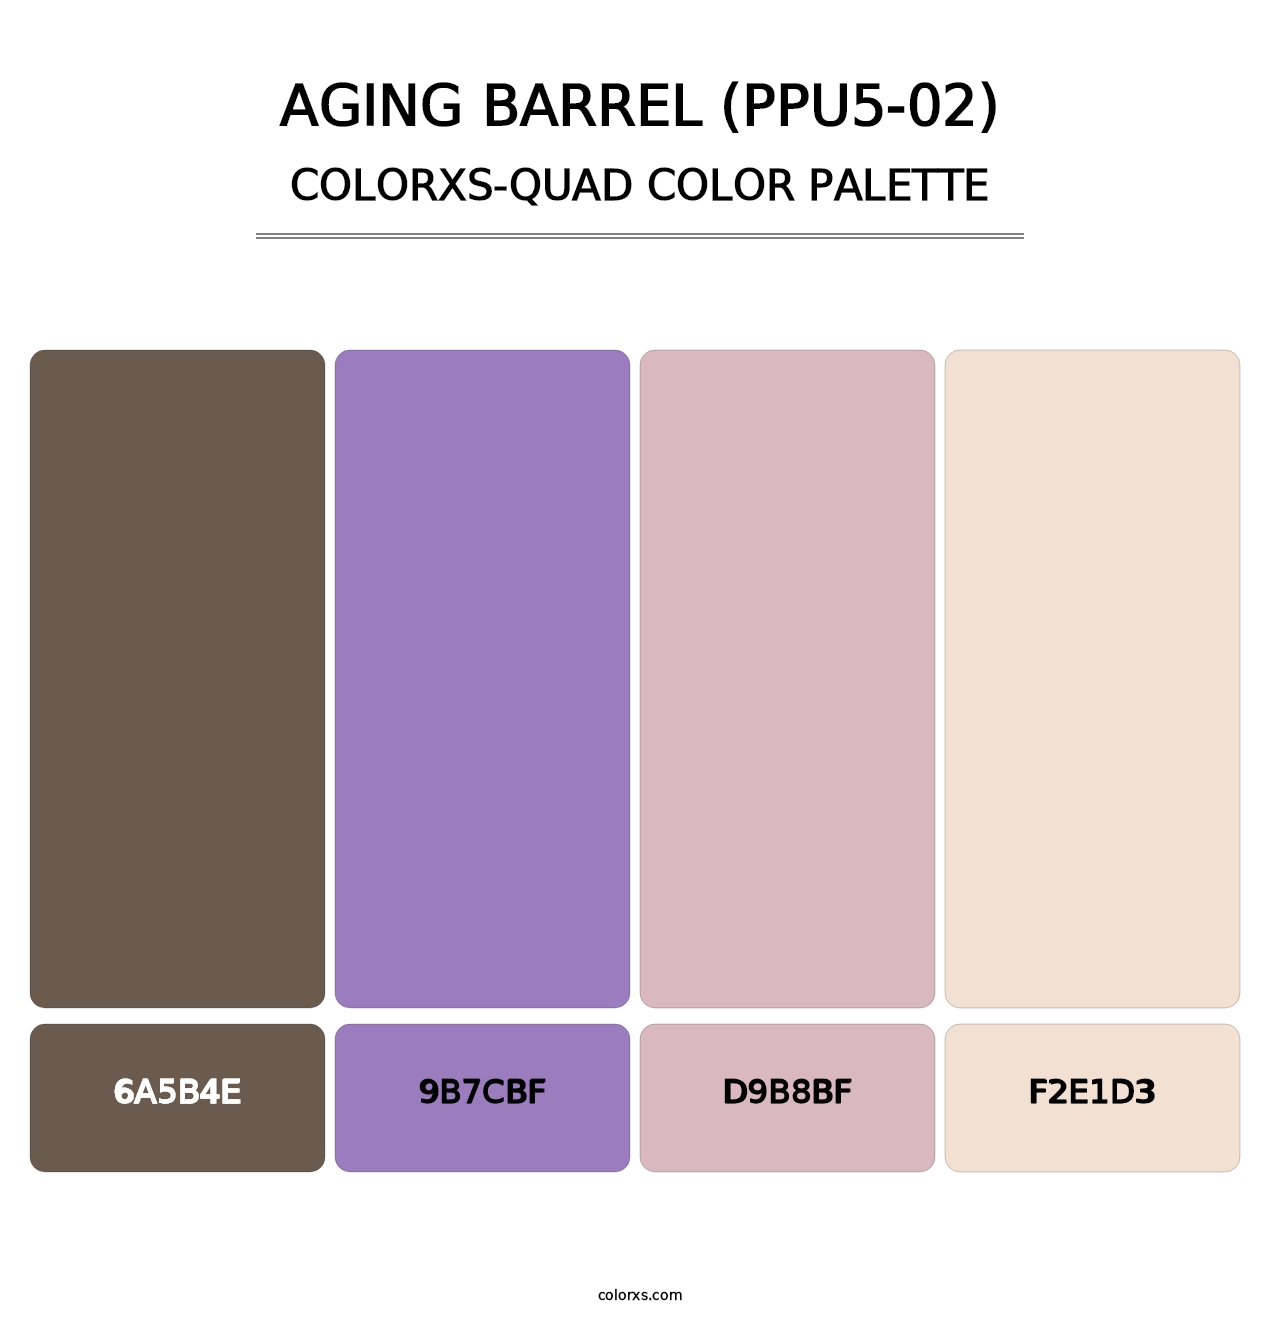 Aging Barrel (PPU5-02) - Colorxs Quad Palette